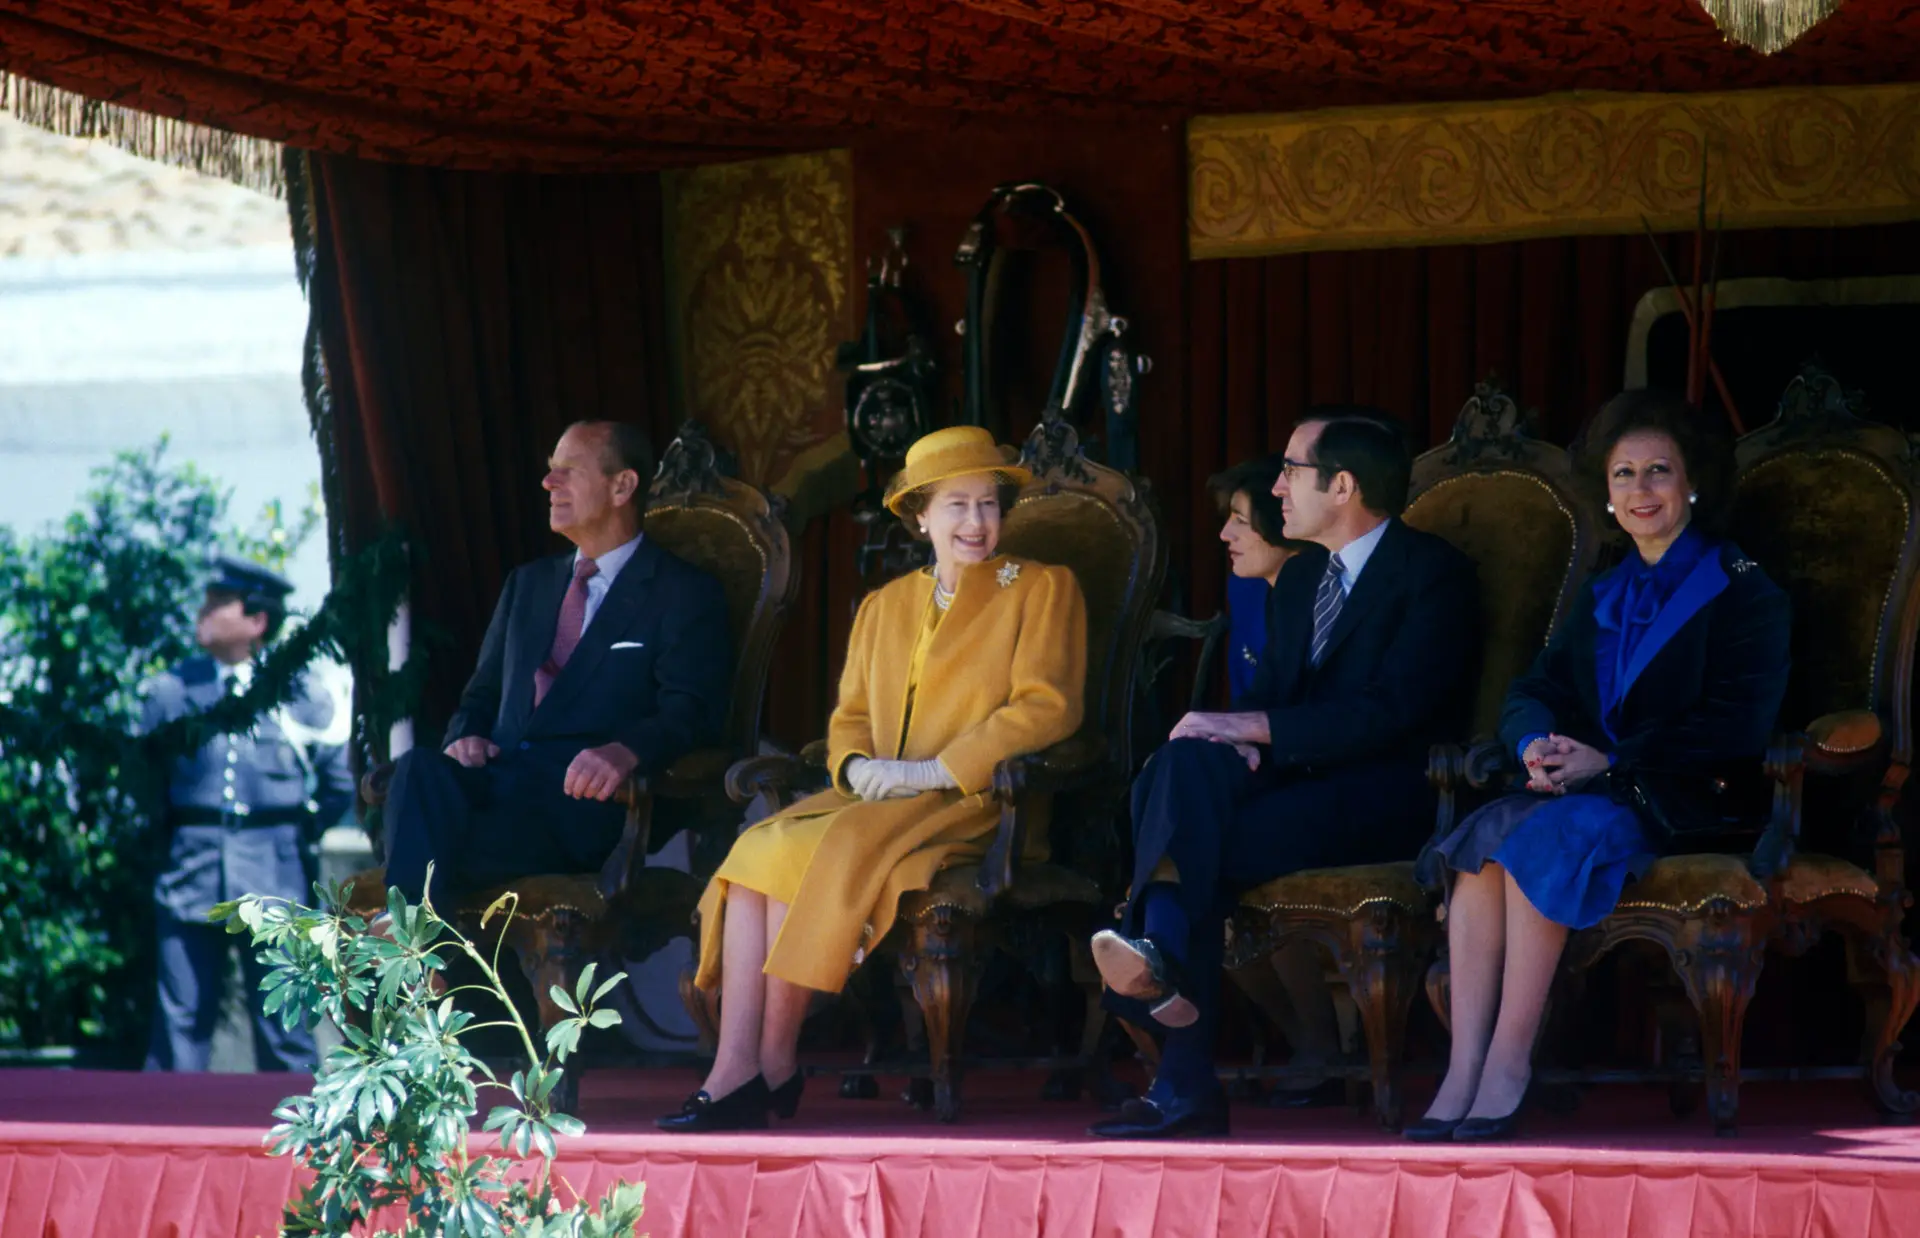 Visita de Isabel II a Portugal em 1985: “A rainha vibrou” com espetáculo da escola equestre em Évora